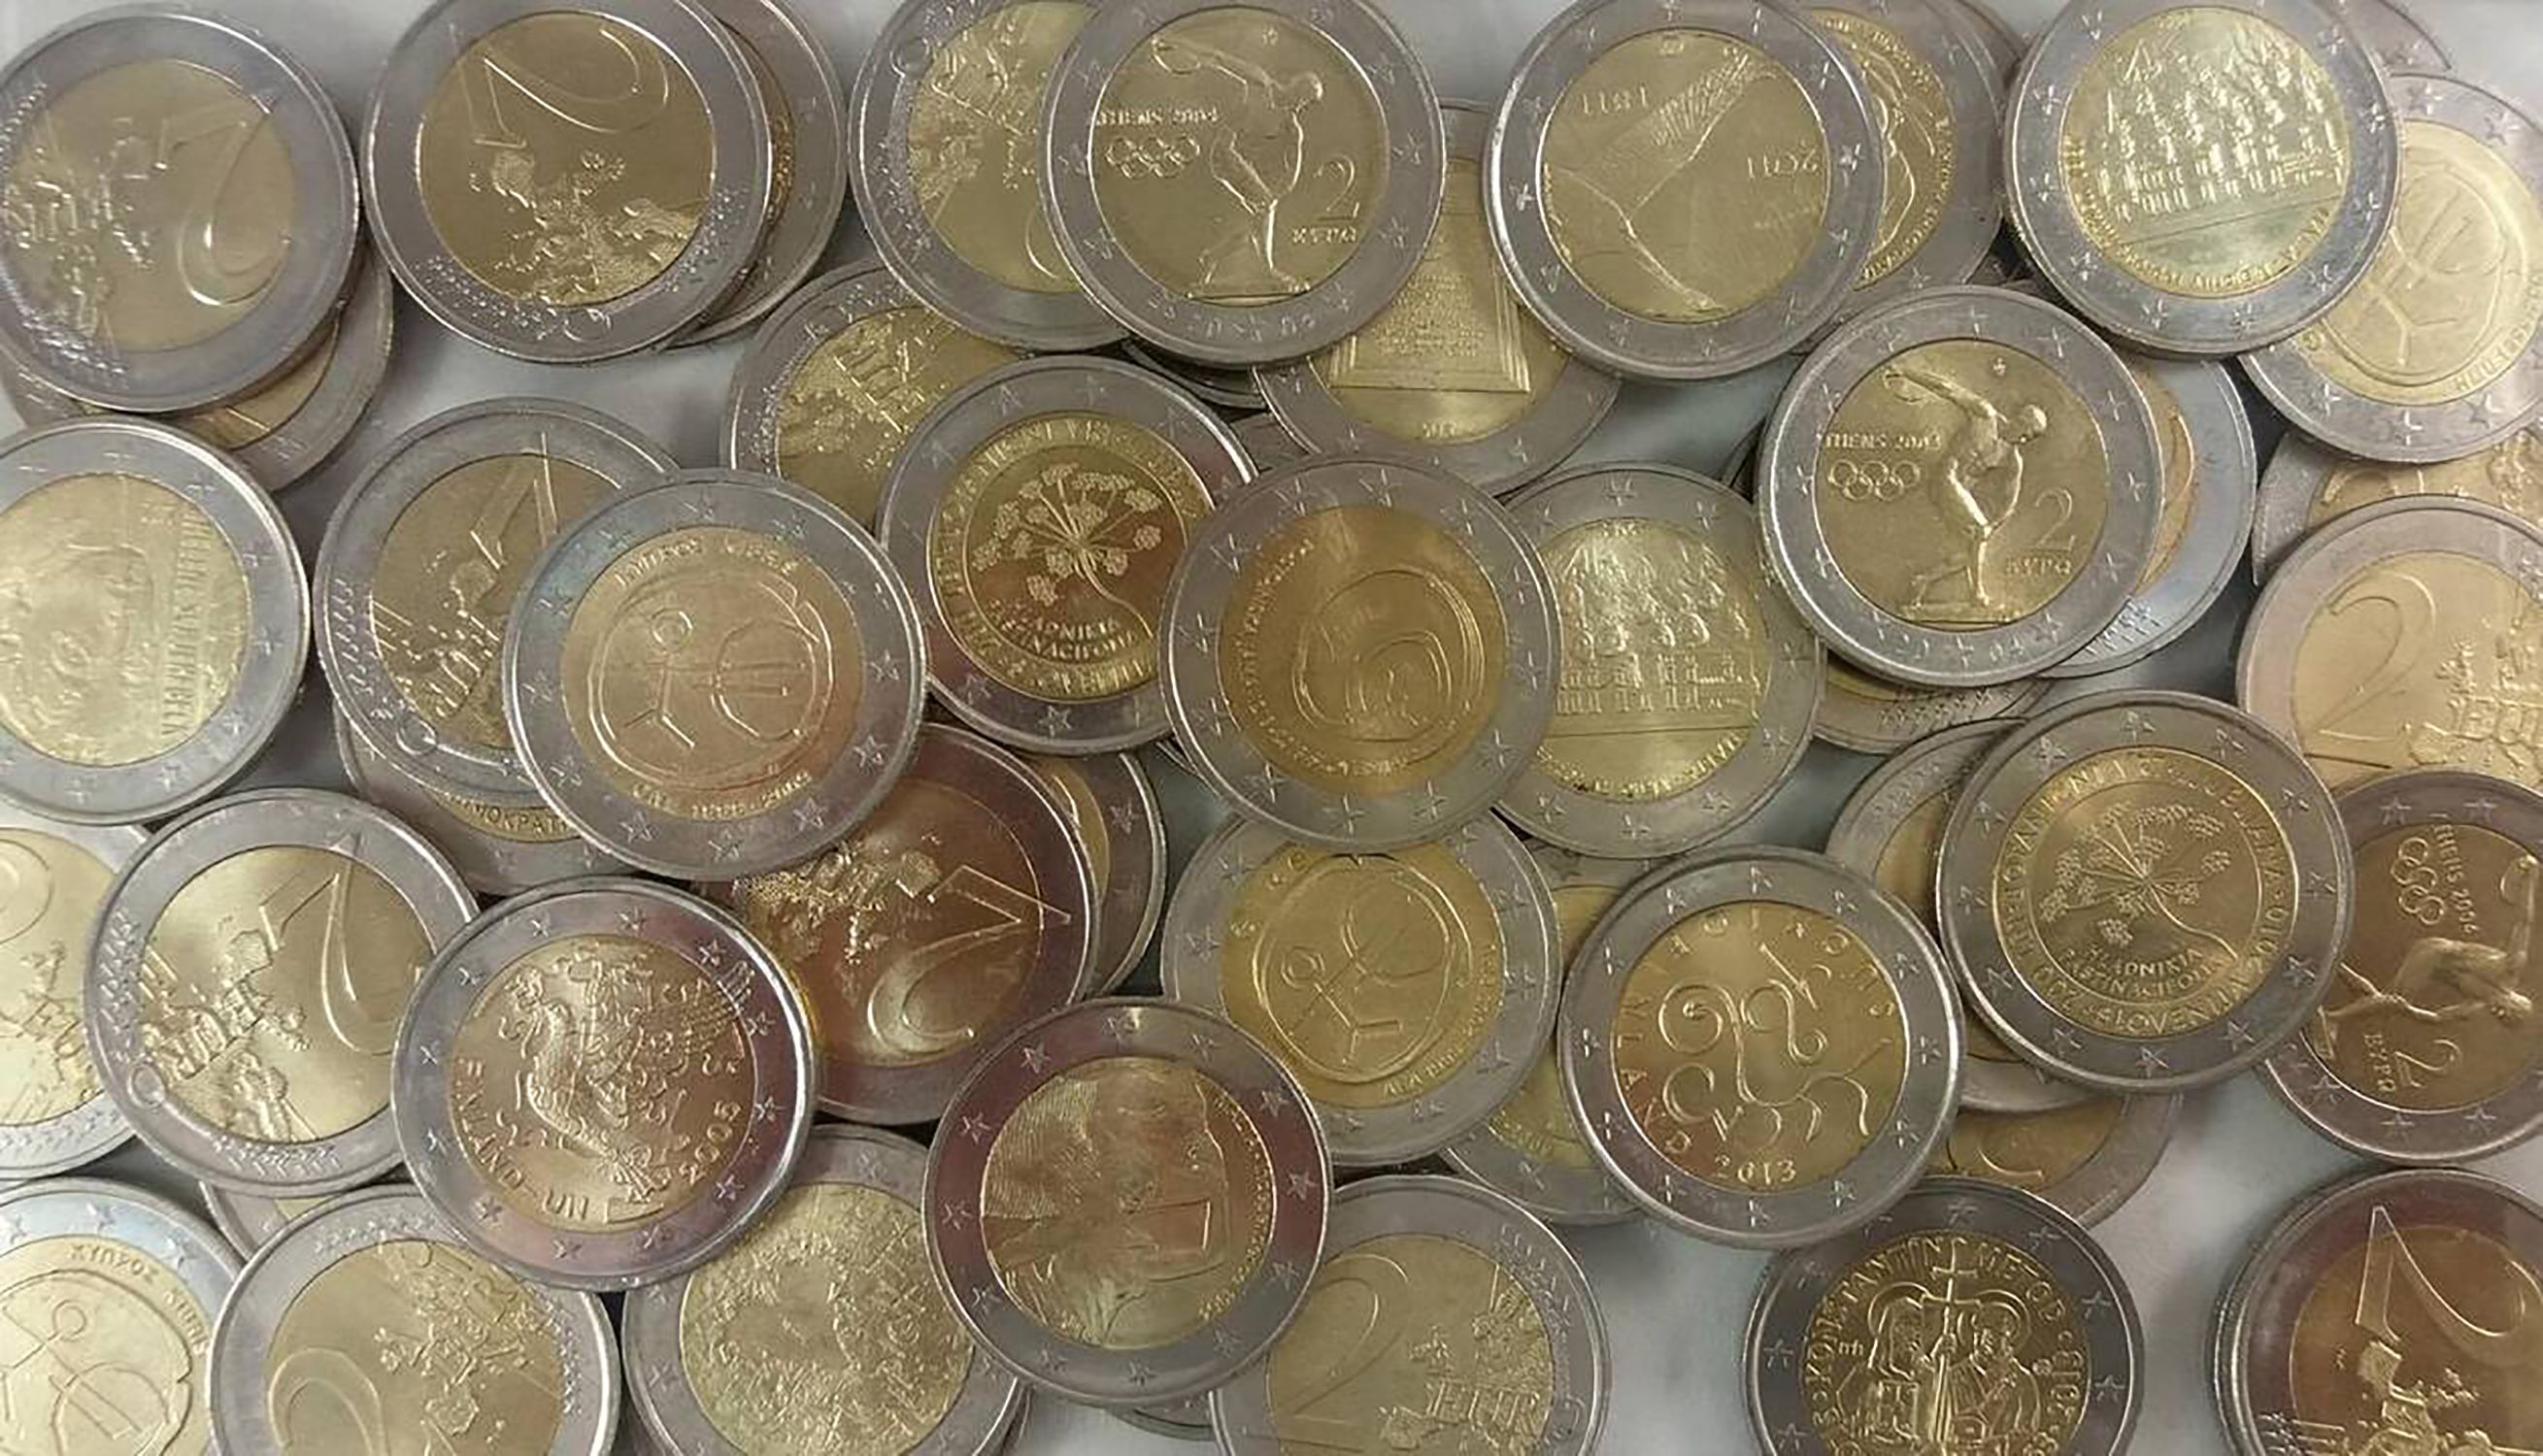 2 euros coins